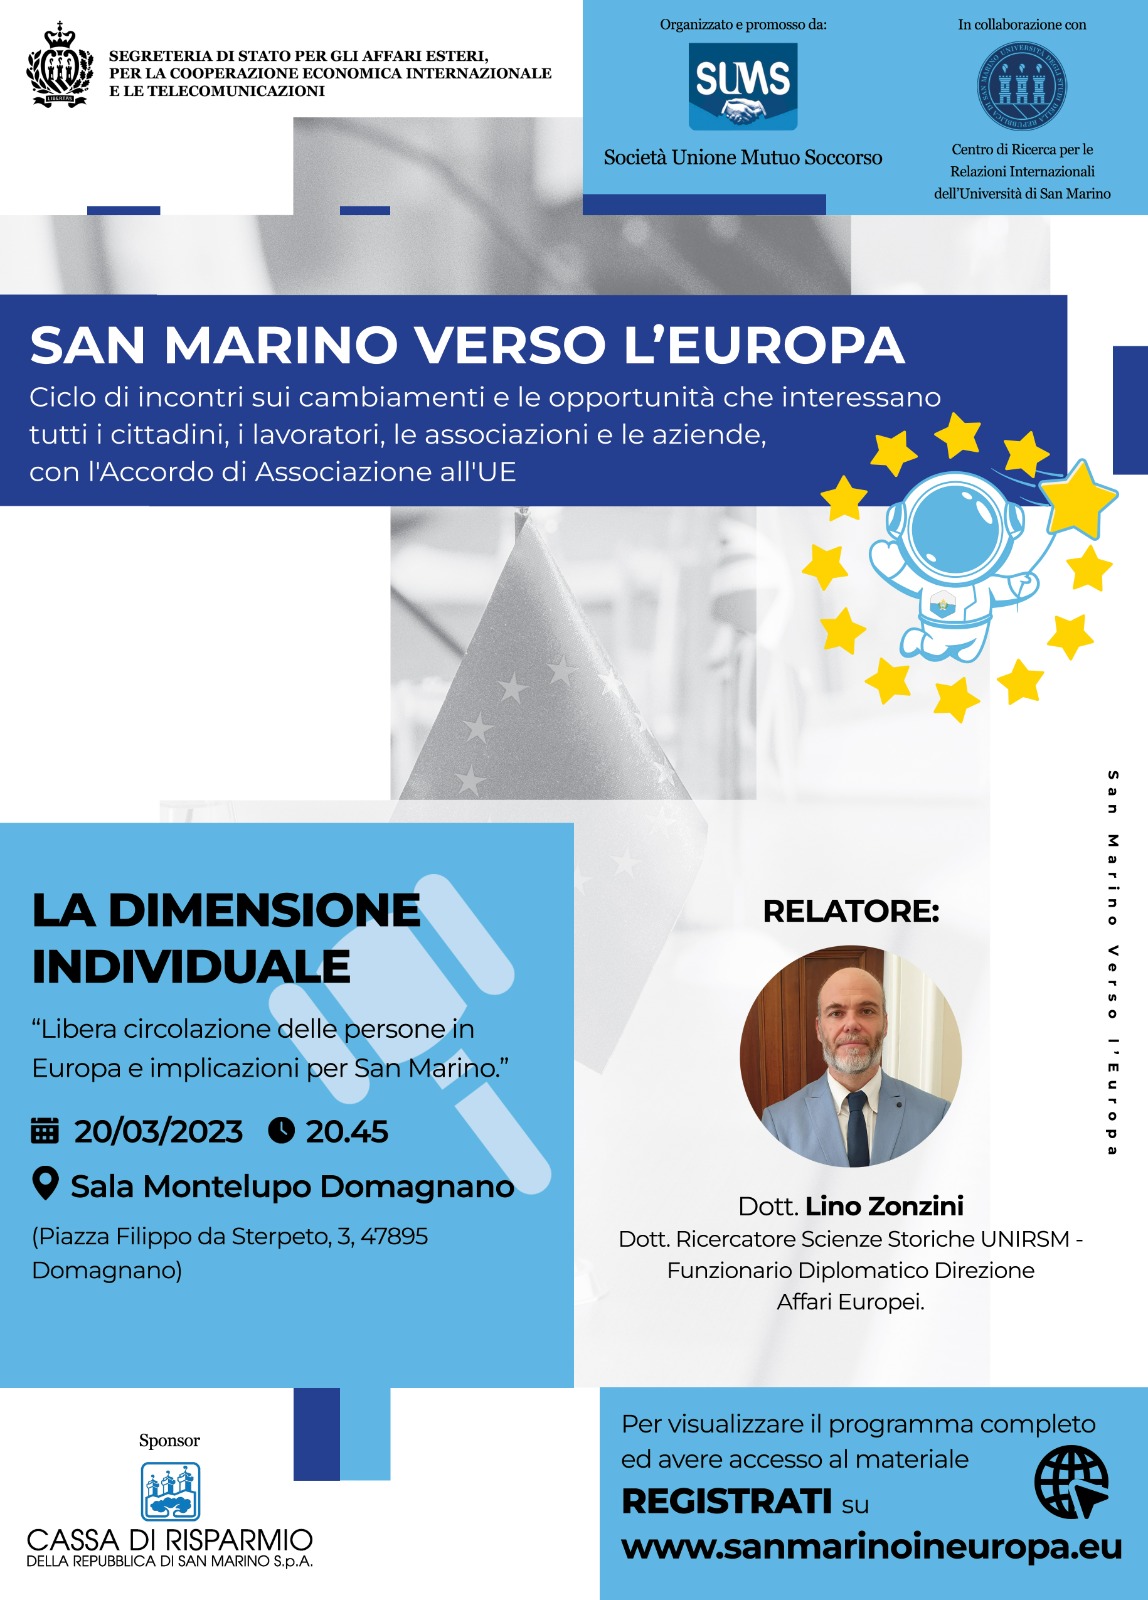 Lunedì terzo incontro di “San Marino verso l’Europa”